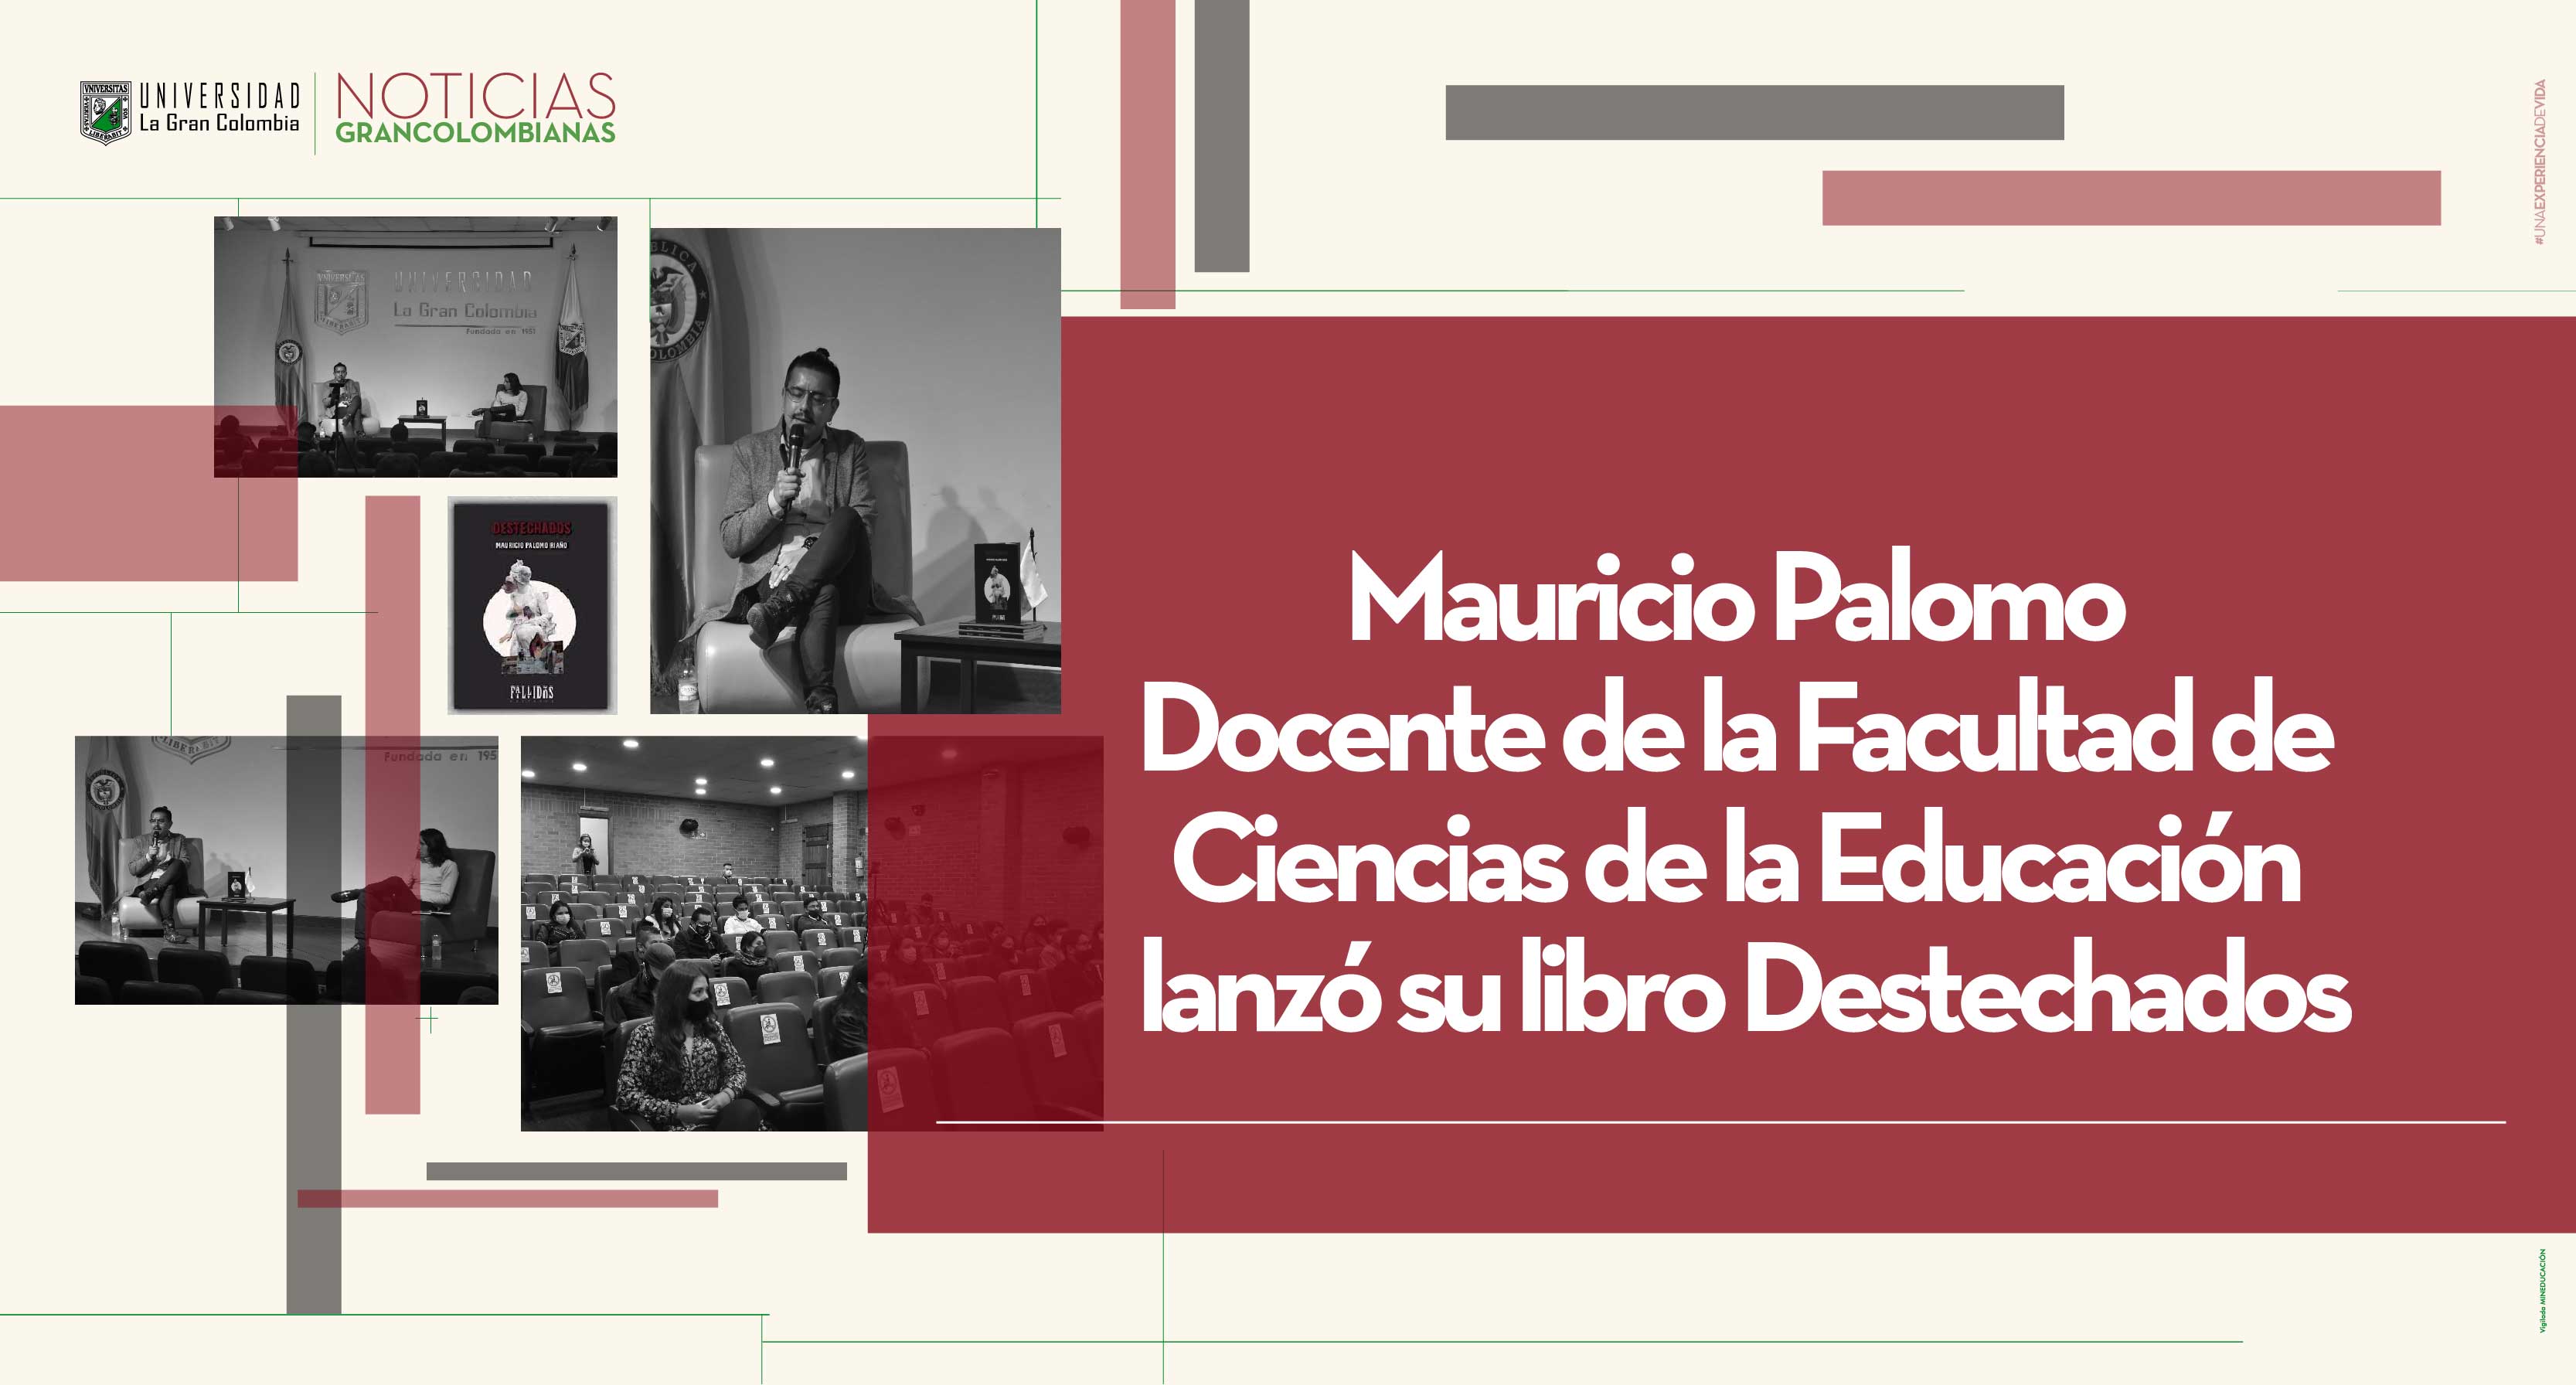 Mauricio Palomo Docente de la Facultad de Ciencias de la Educación lanzó su libro Destechados